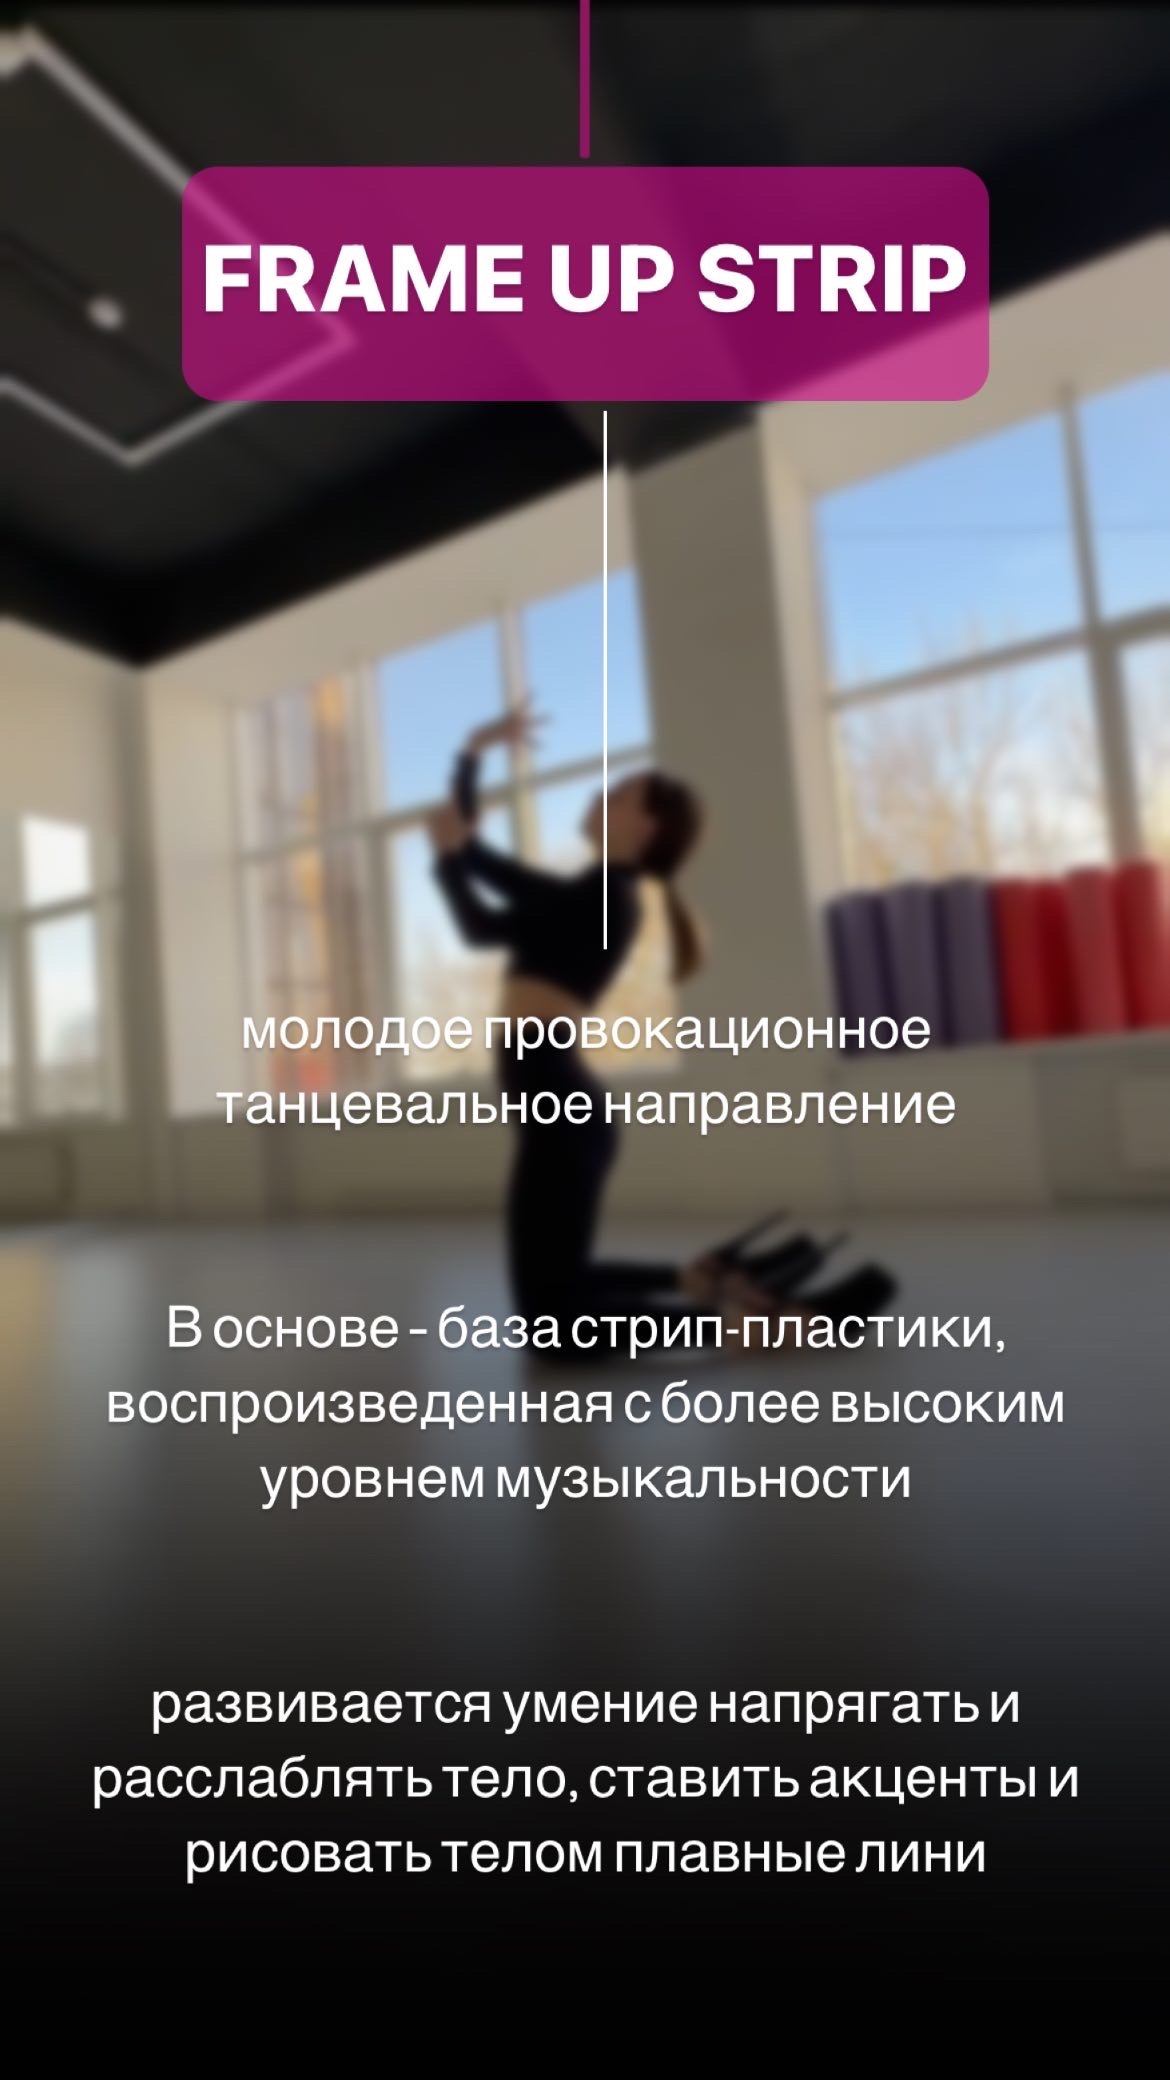 Новое танцевальное направление FRAME UP STRIP в Ставрополе, Студия LEEK DANCE FIT в юго-западном районе города..., ул. 50 лет ВЛКСМ 24А, телефон для записи: +7 (9064) 76-44-76